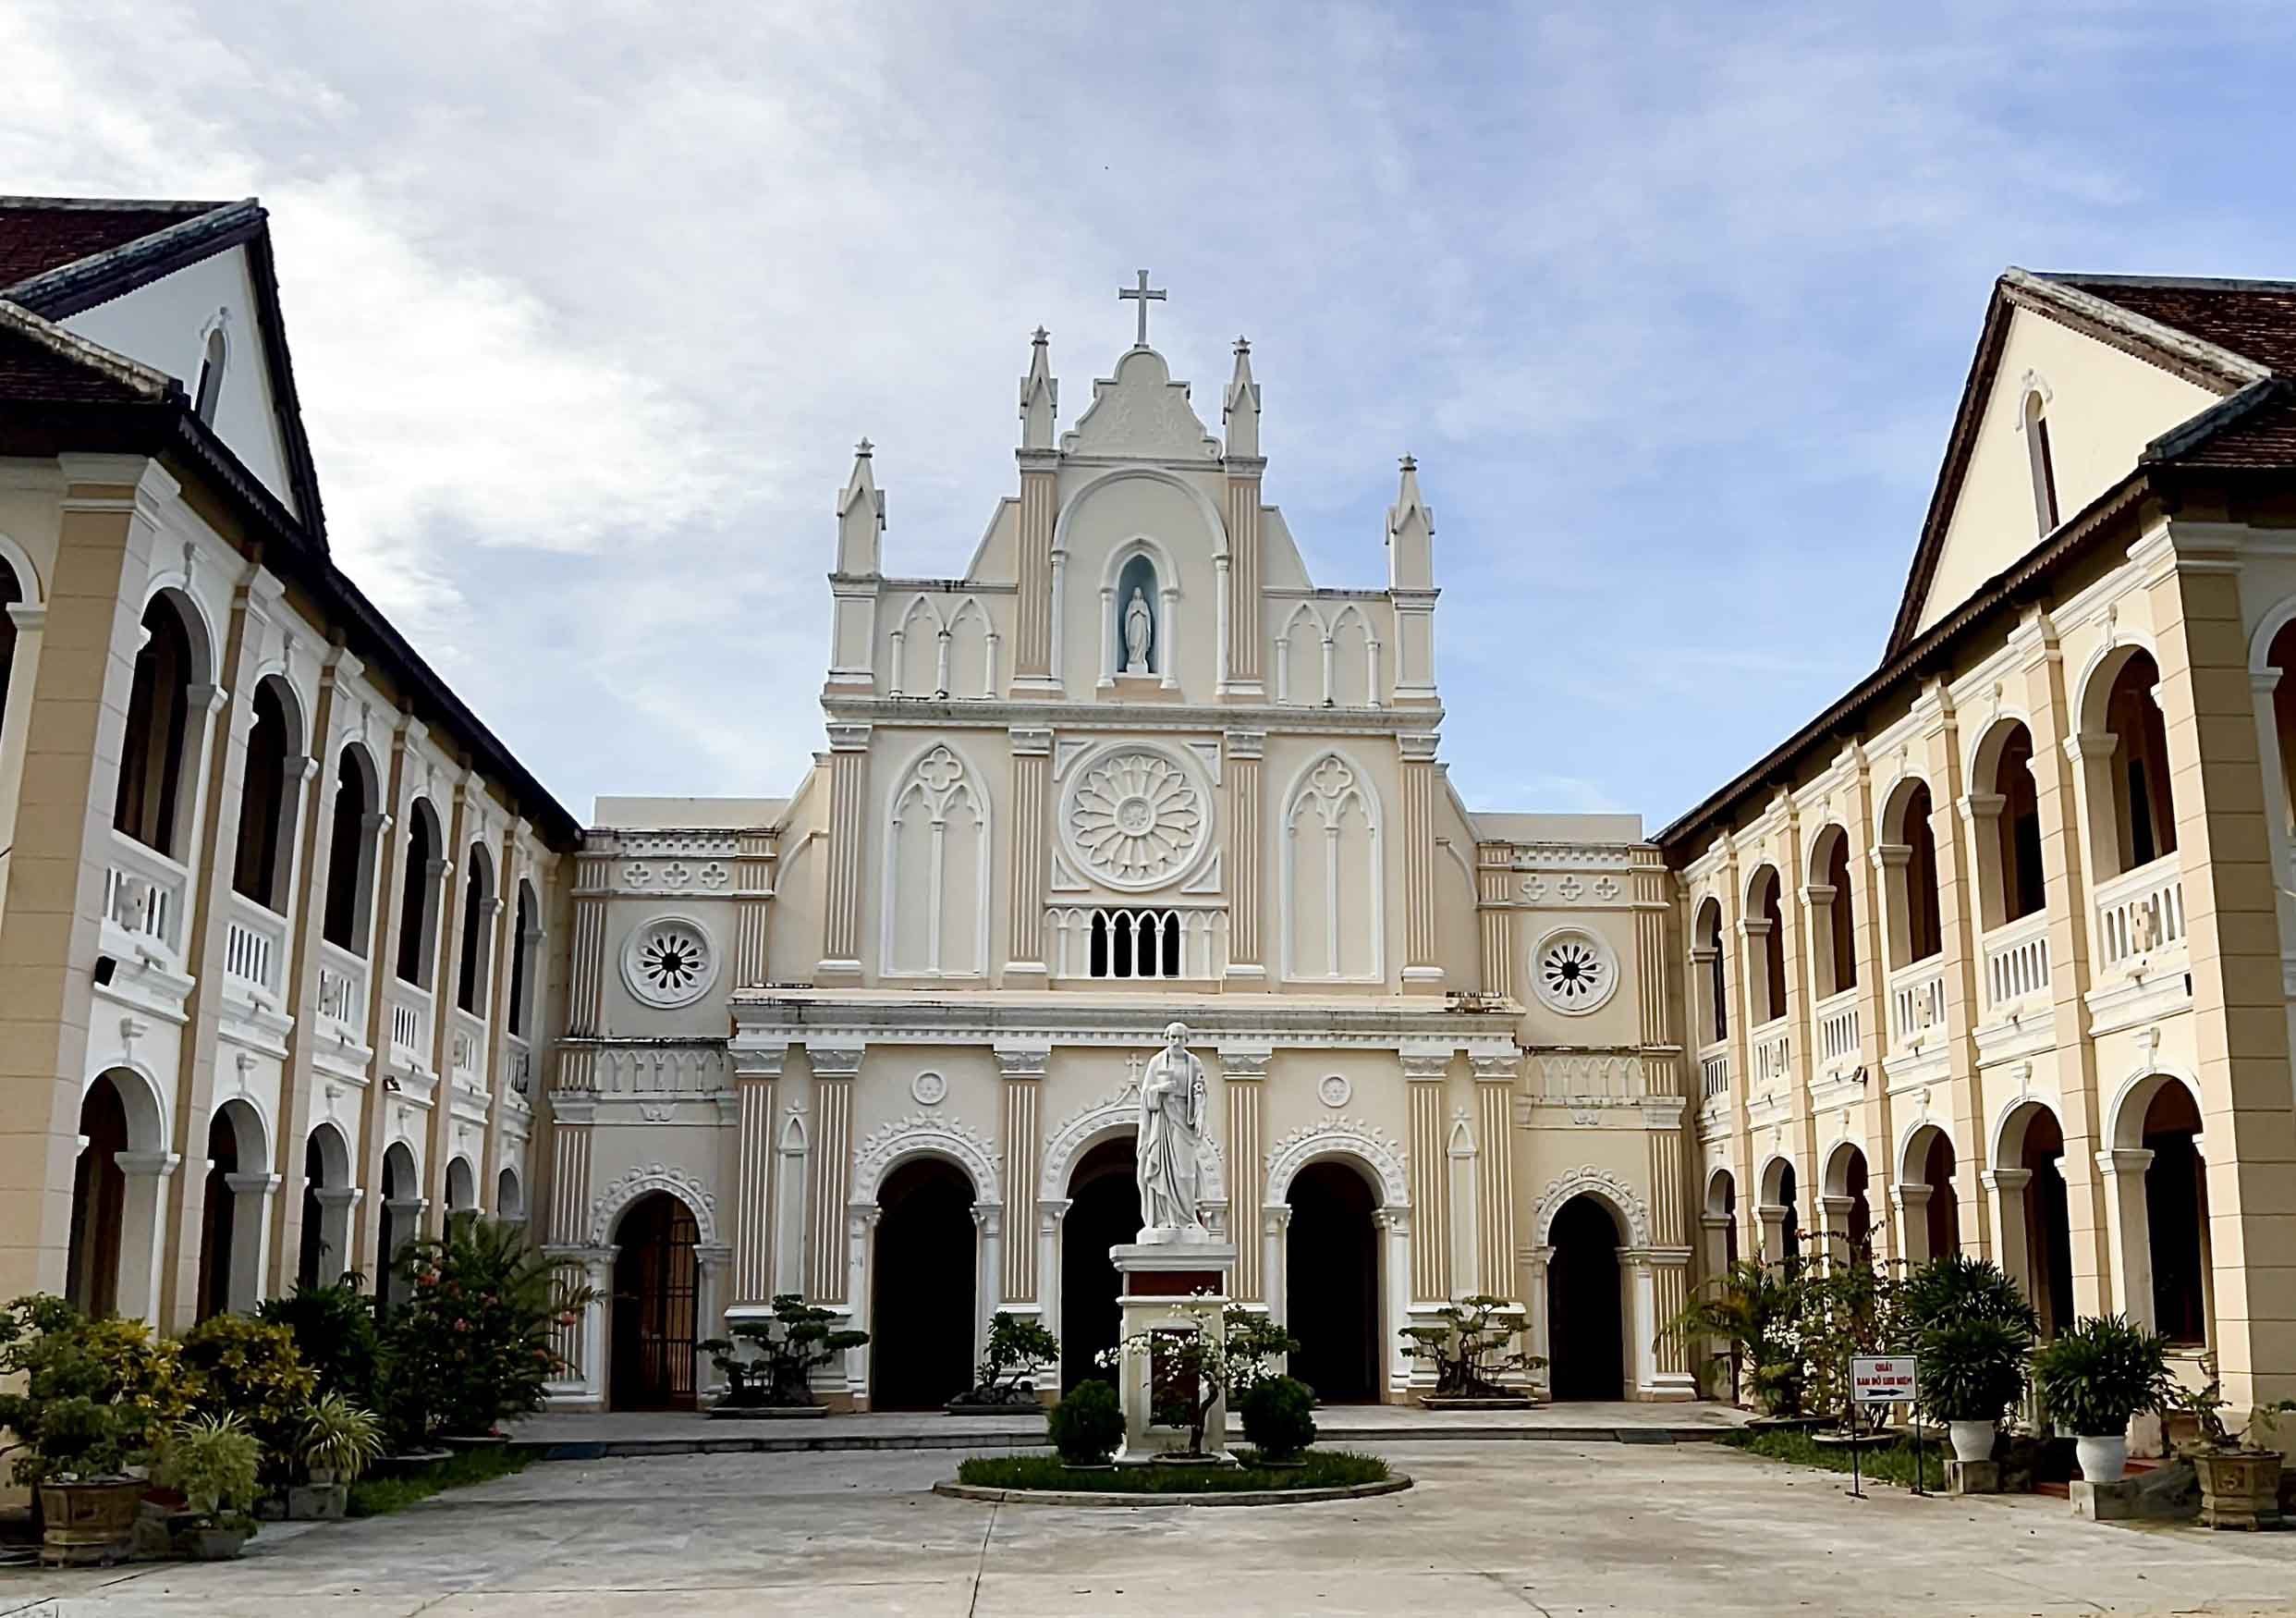 Nhà thờ có kiến trúc Gothic nằm giữa đồng lúa ở Bình Định